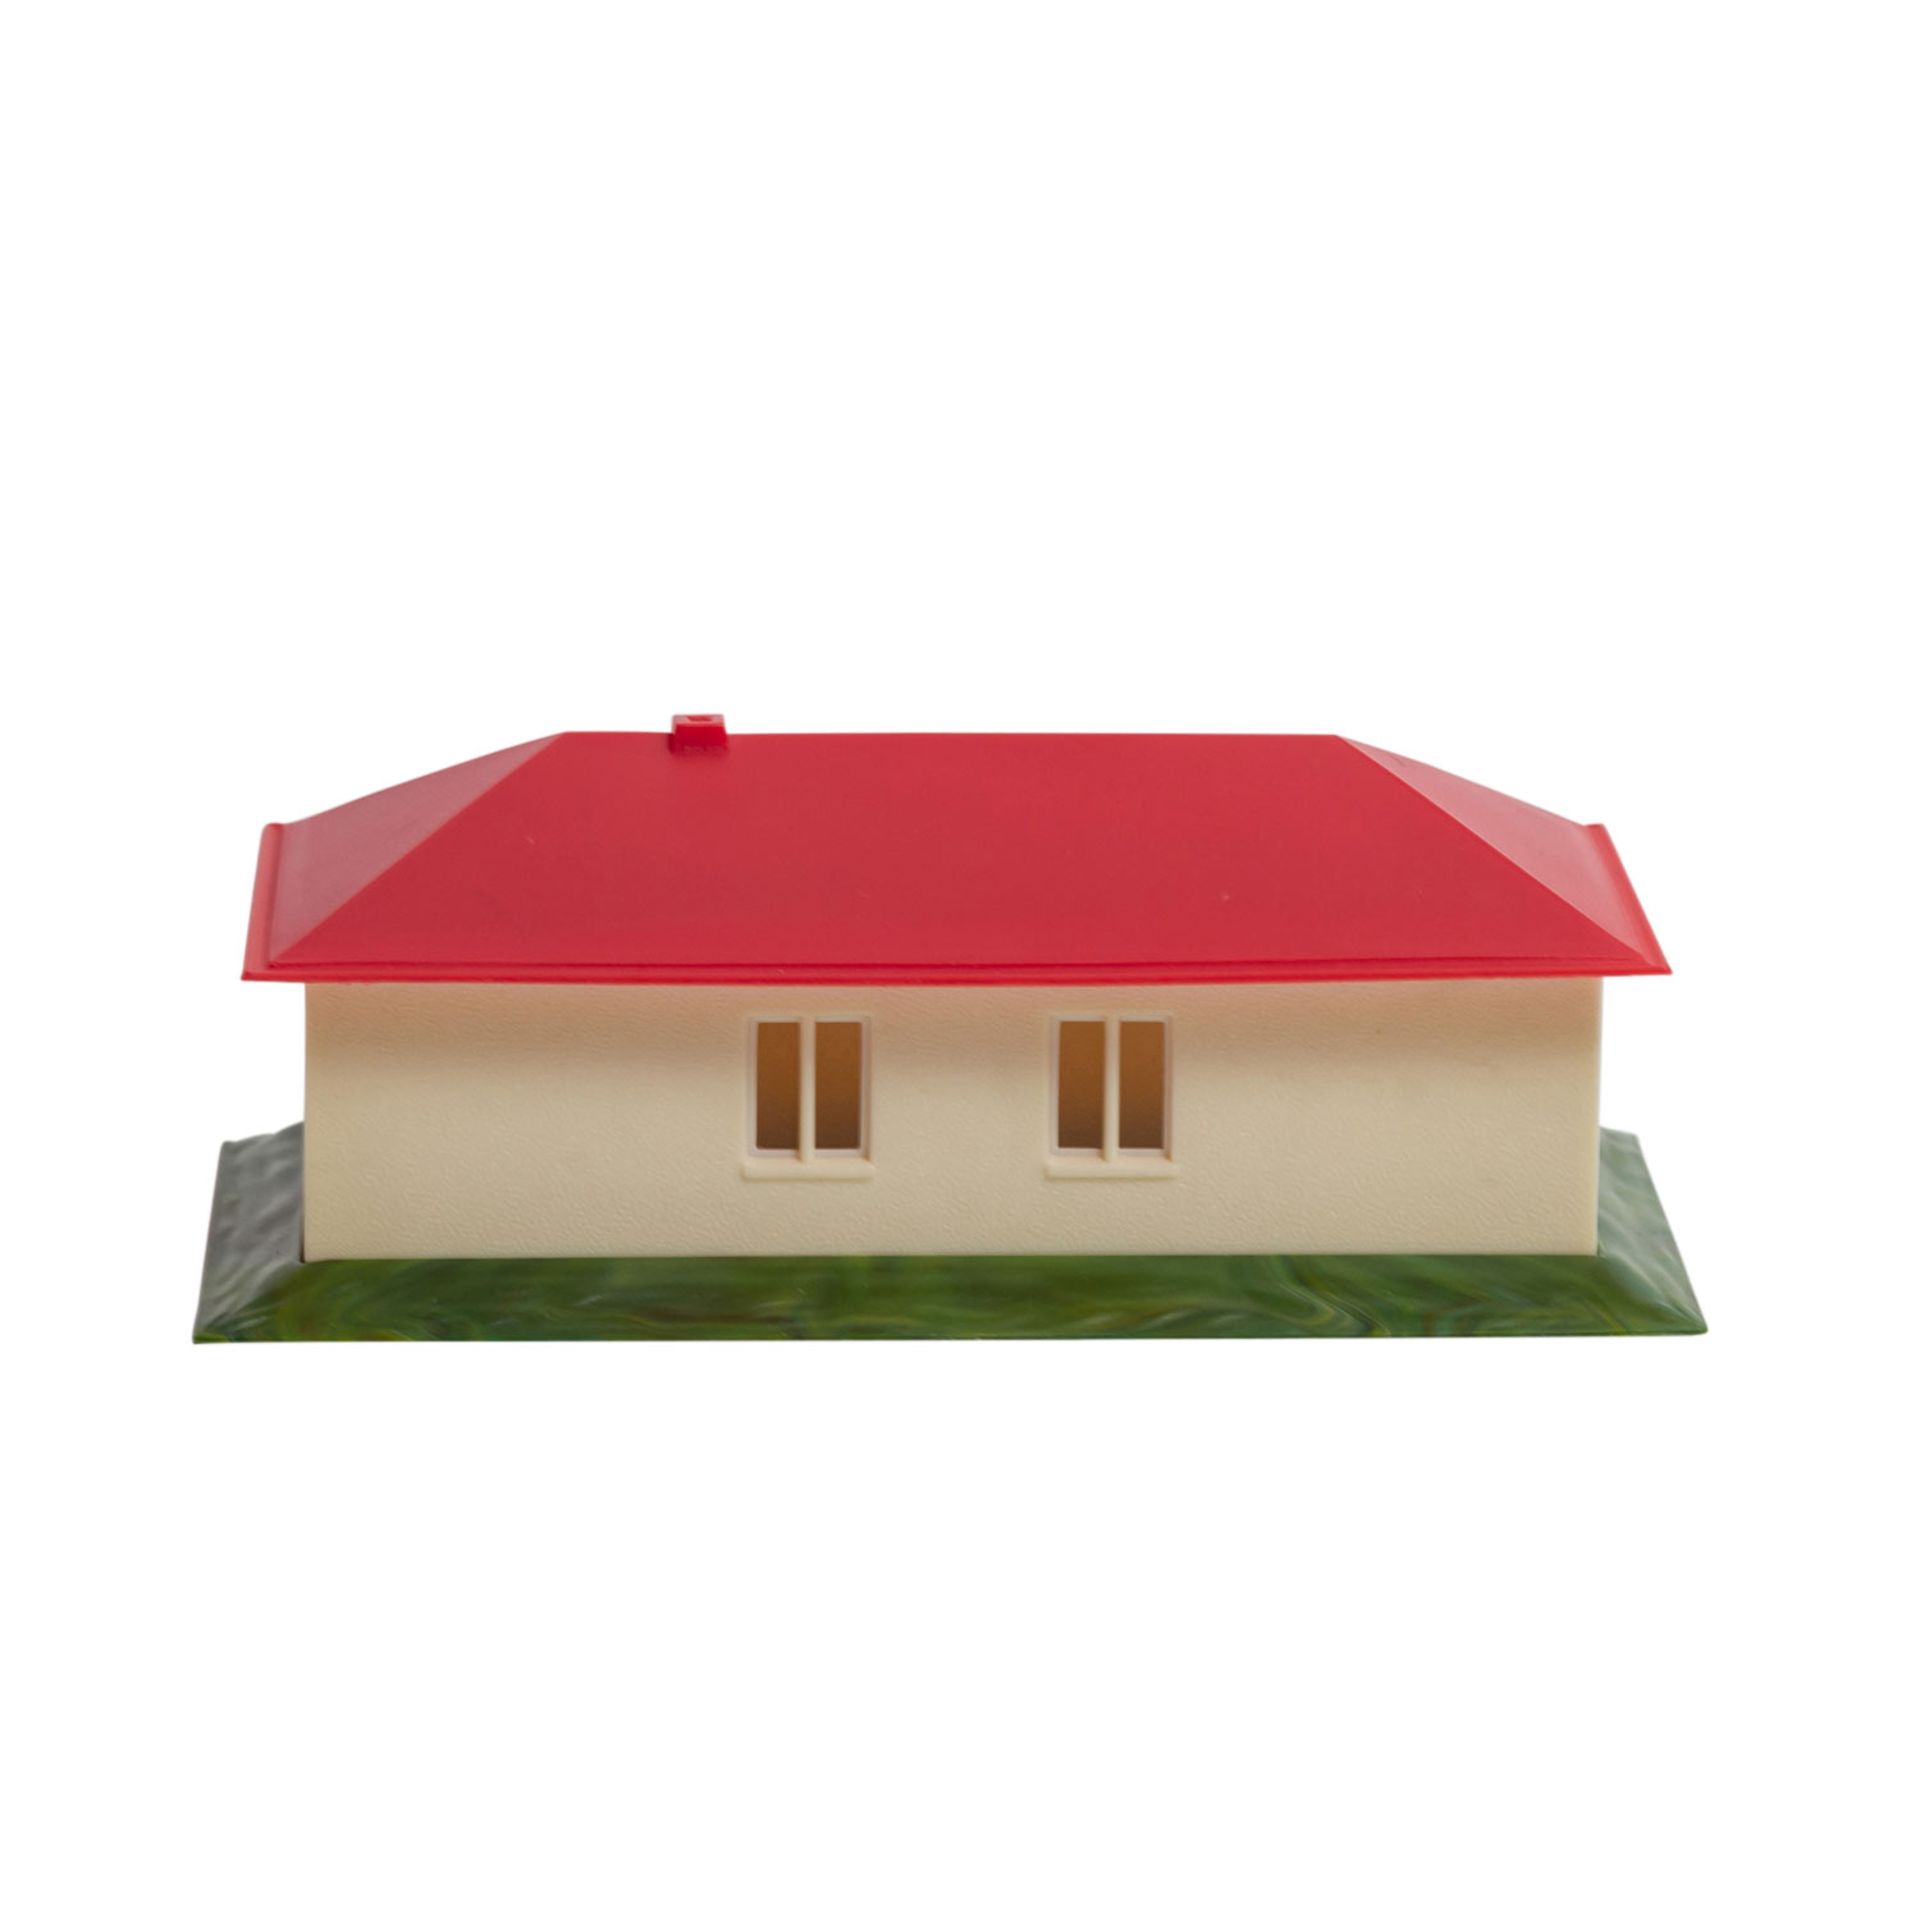 WIKING Landhaus ohne Einrichtung,Landhaus mit rotem Dach, ohne Bemalung, Bodenprägung - Bild 2 aus 4